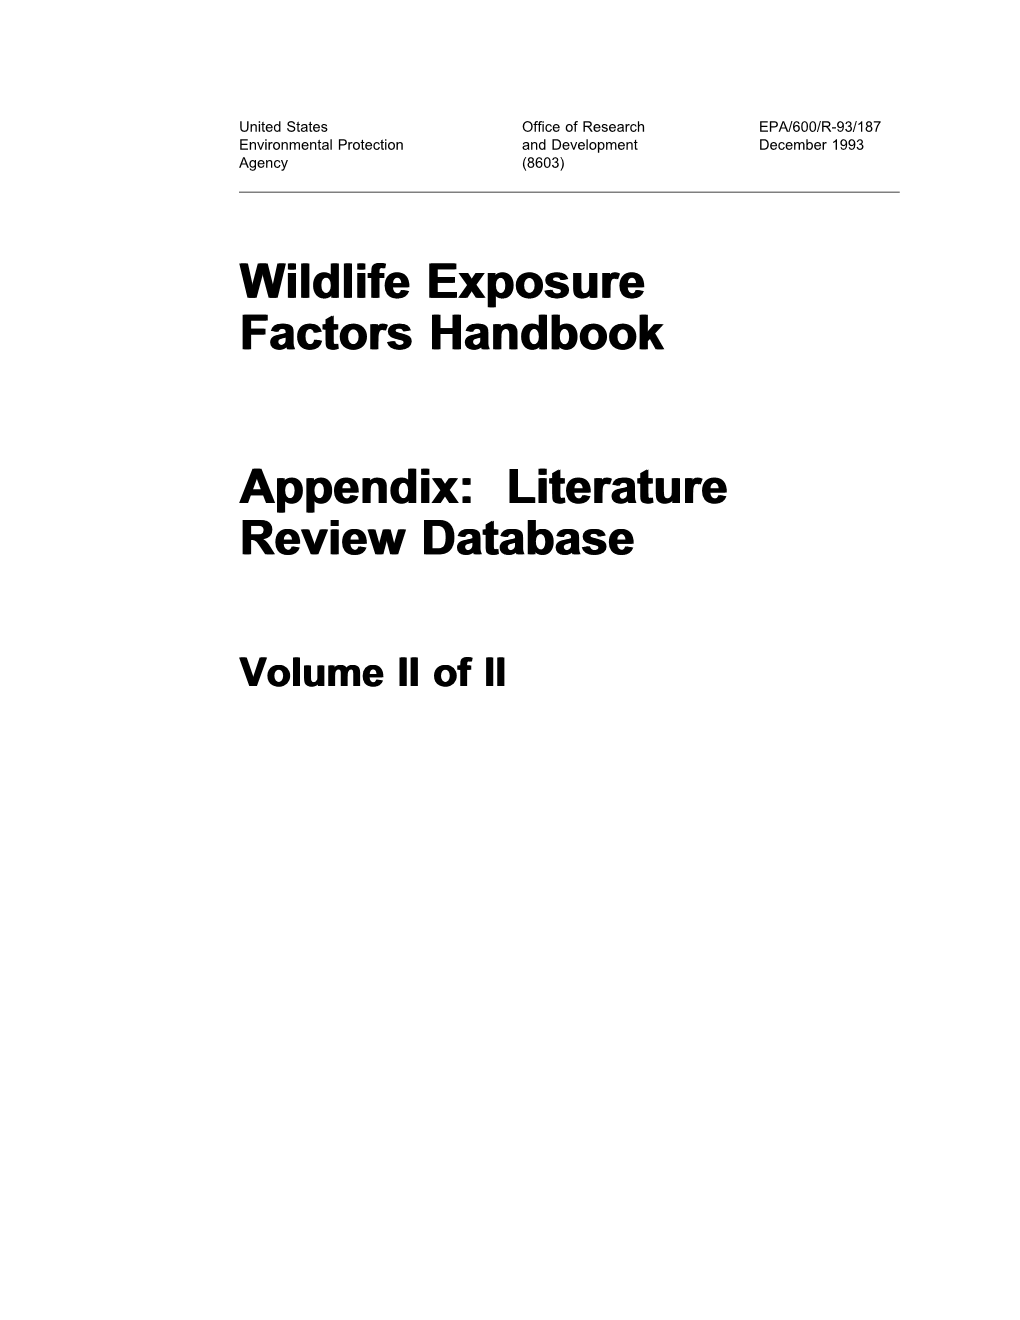 Wildlife Exposure Factors Handbook